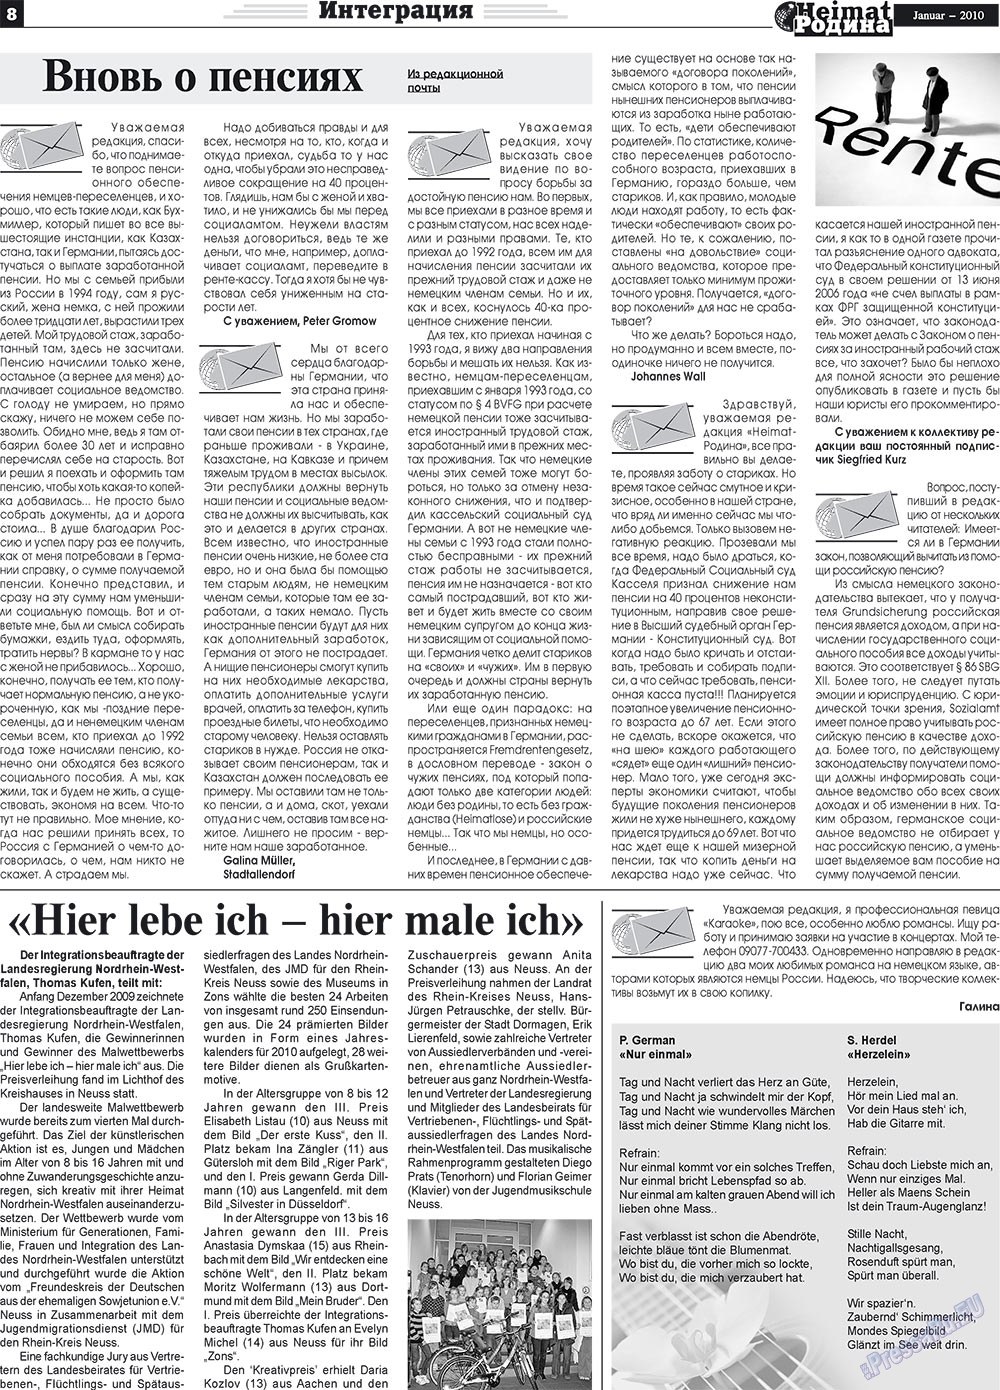 Heimat-Родина (газета). 2010 год, номер 1, стр. 8